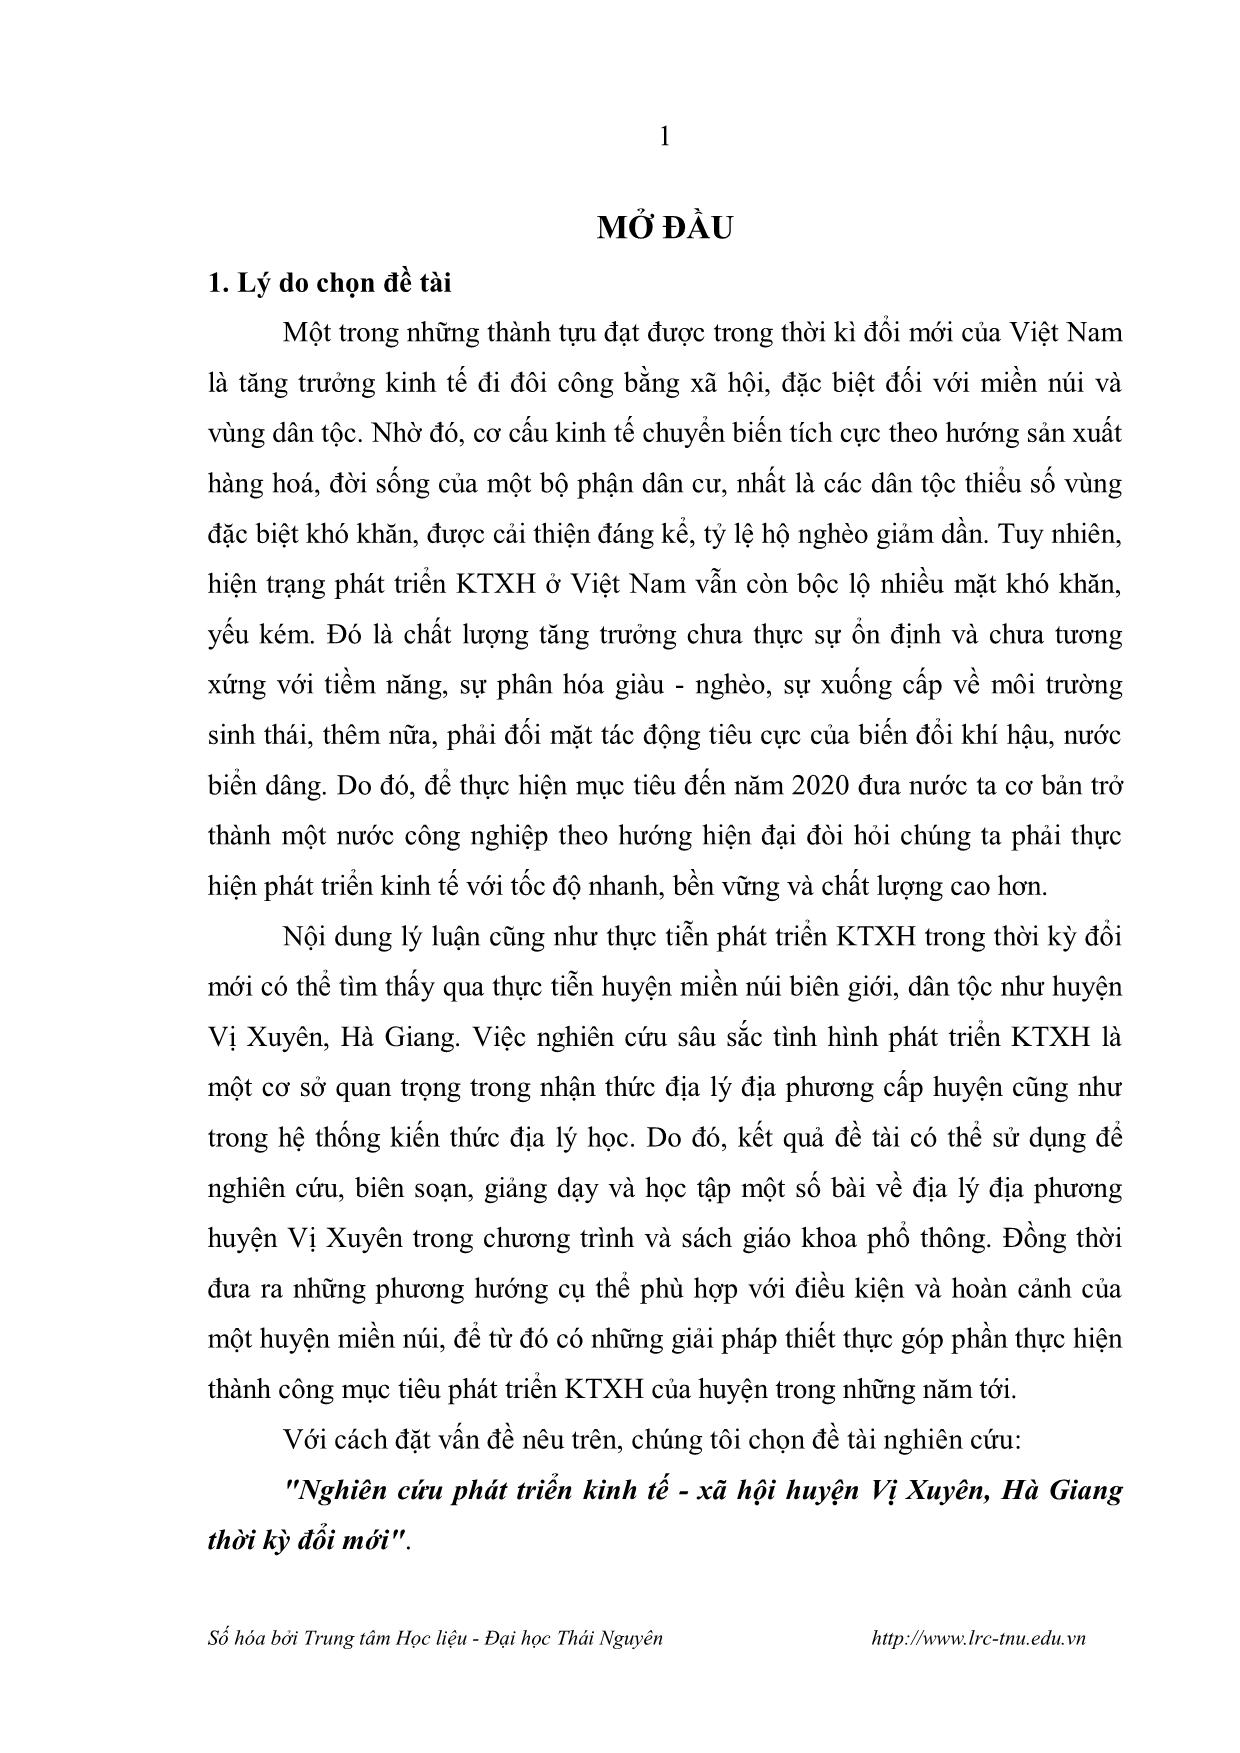 Luận văn Nghiên cứu phát triển Kinh tế - Xã hội huyện Vị Xuyên, Hà Giang thời kỳ đổi mới trang 3